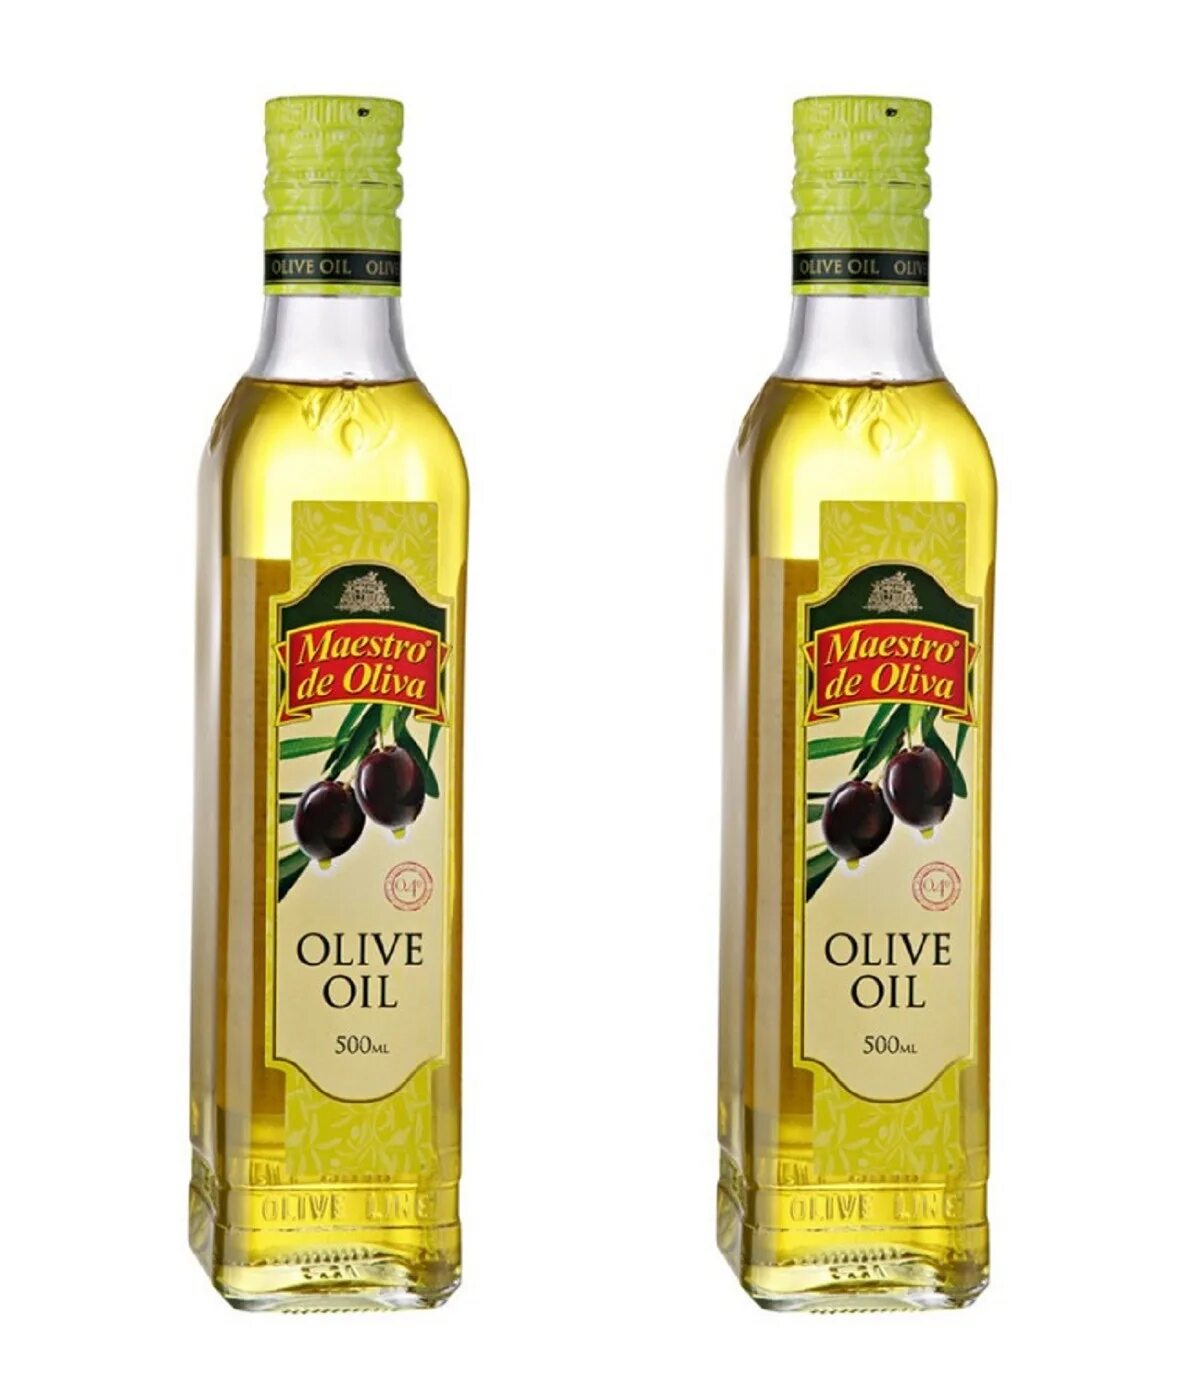 Масло оливковое Maestro de Oliva Extra Virgin нерафинированное, 1 л. Olive Oil нерафинированное масло оливковое. Масло оливковое нерафинированное первого холодного отжима. Olive Oil масло оливковое рафинированное и нерафинированное. Для жарки лучше рафинированное или нерафинированное масло